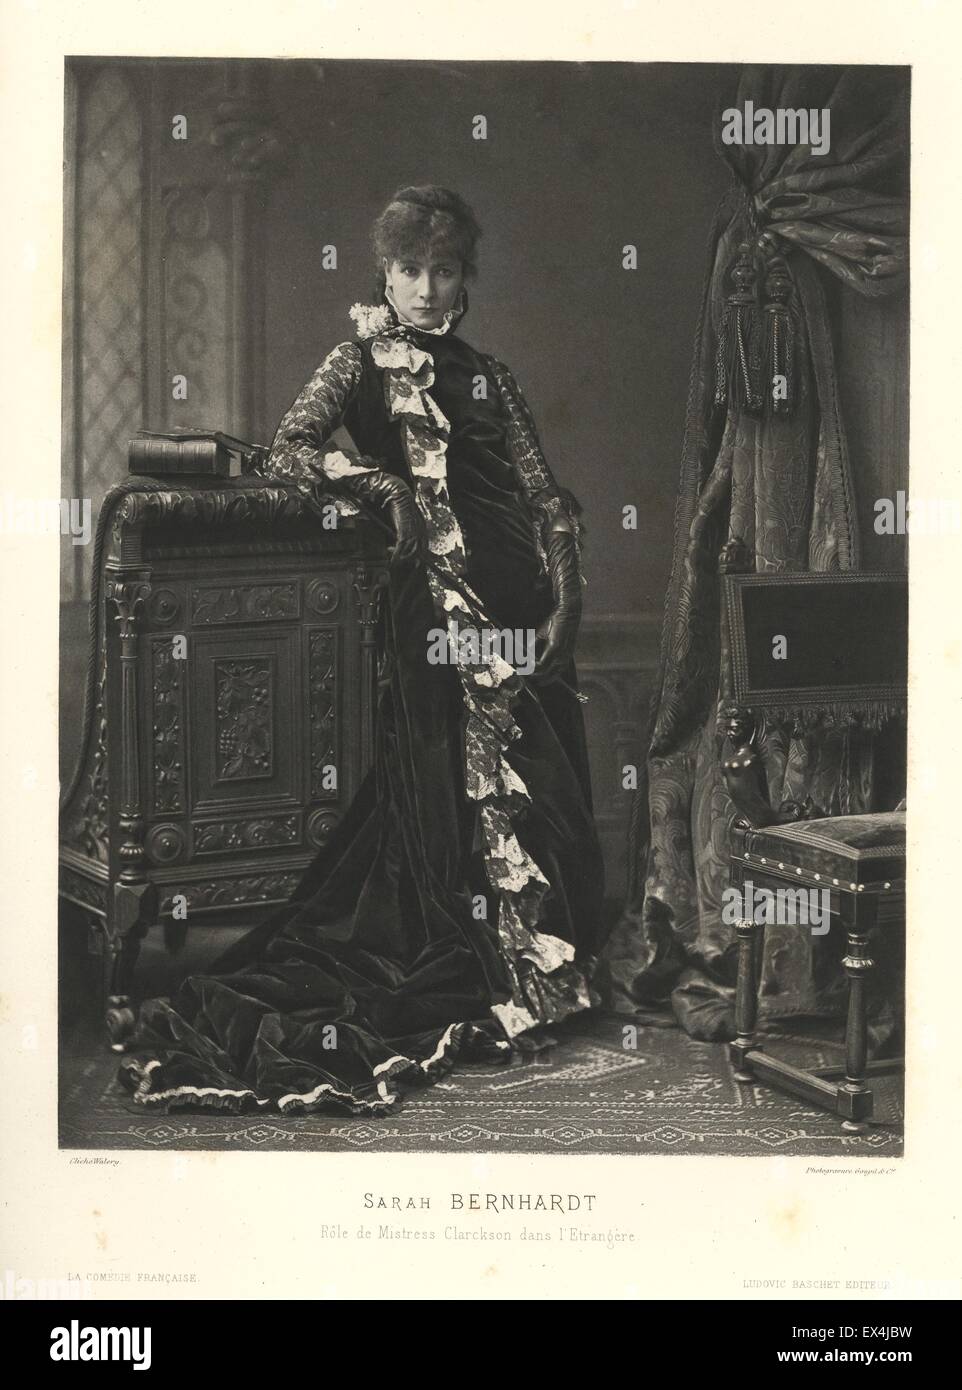 Sarah Bernhardt, by Walery, ca 1880 Stock Photo